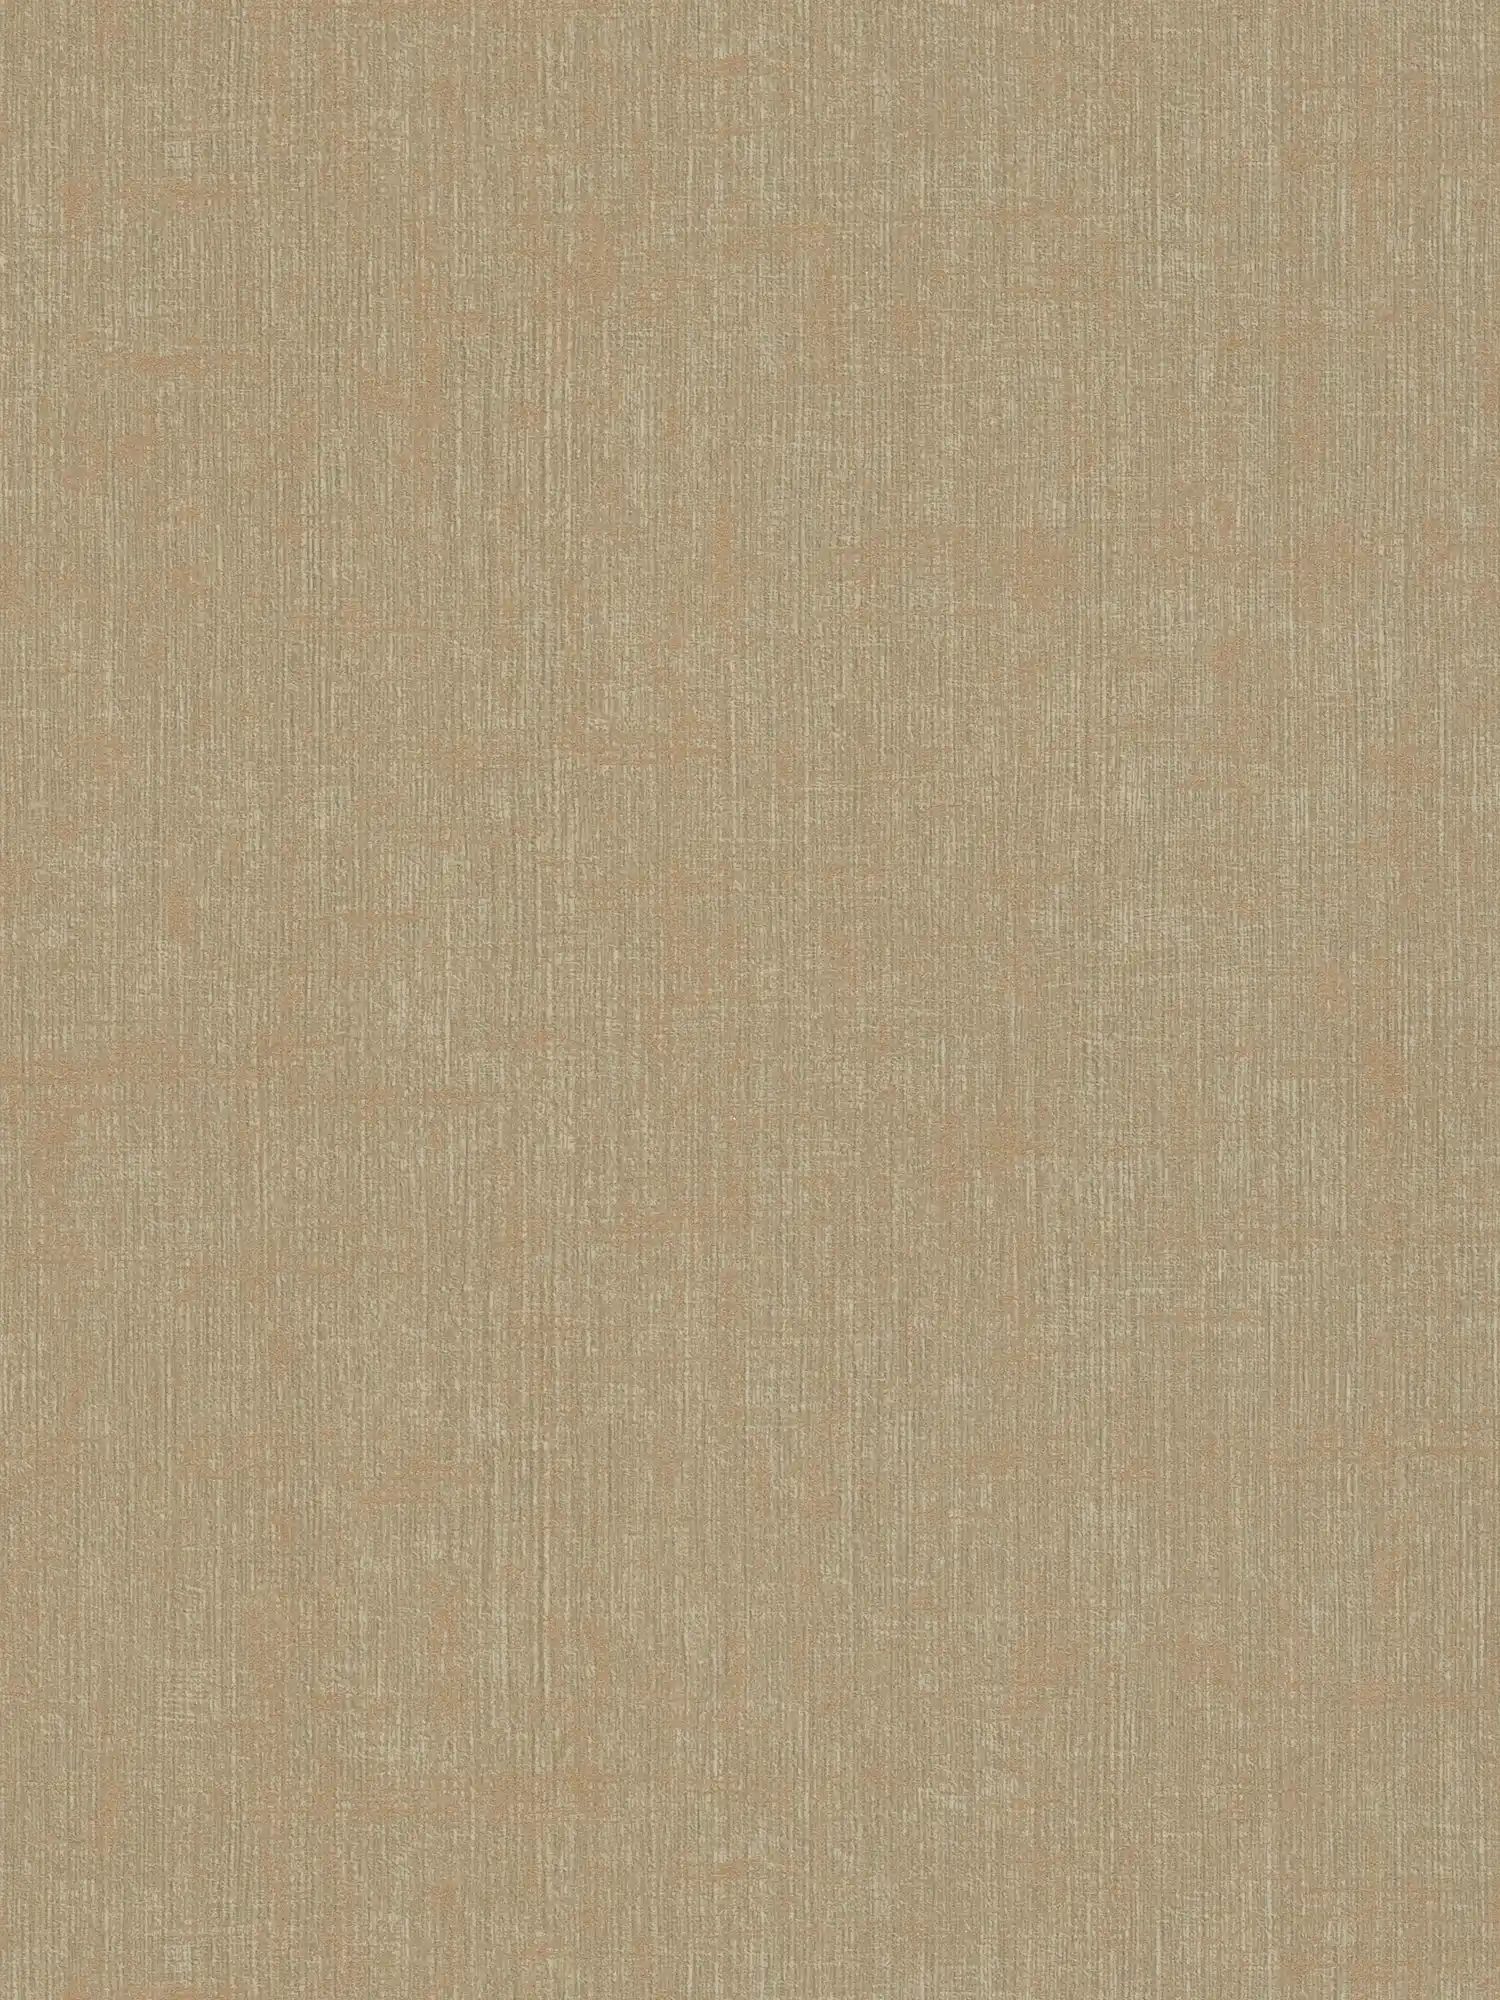 Brown wallpaper, coarse linen look
